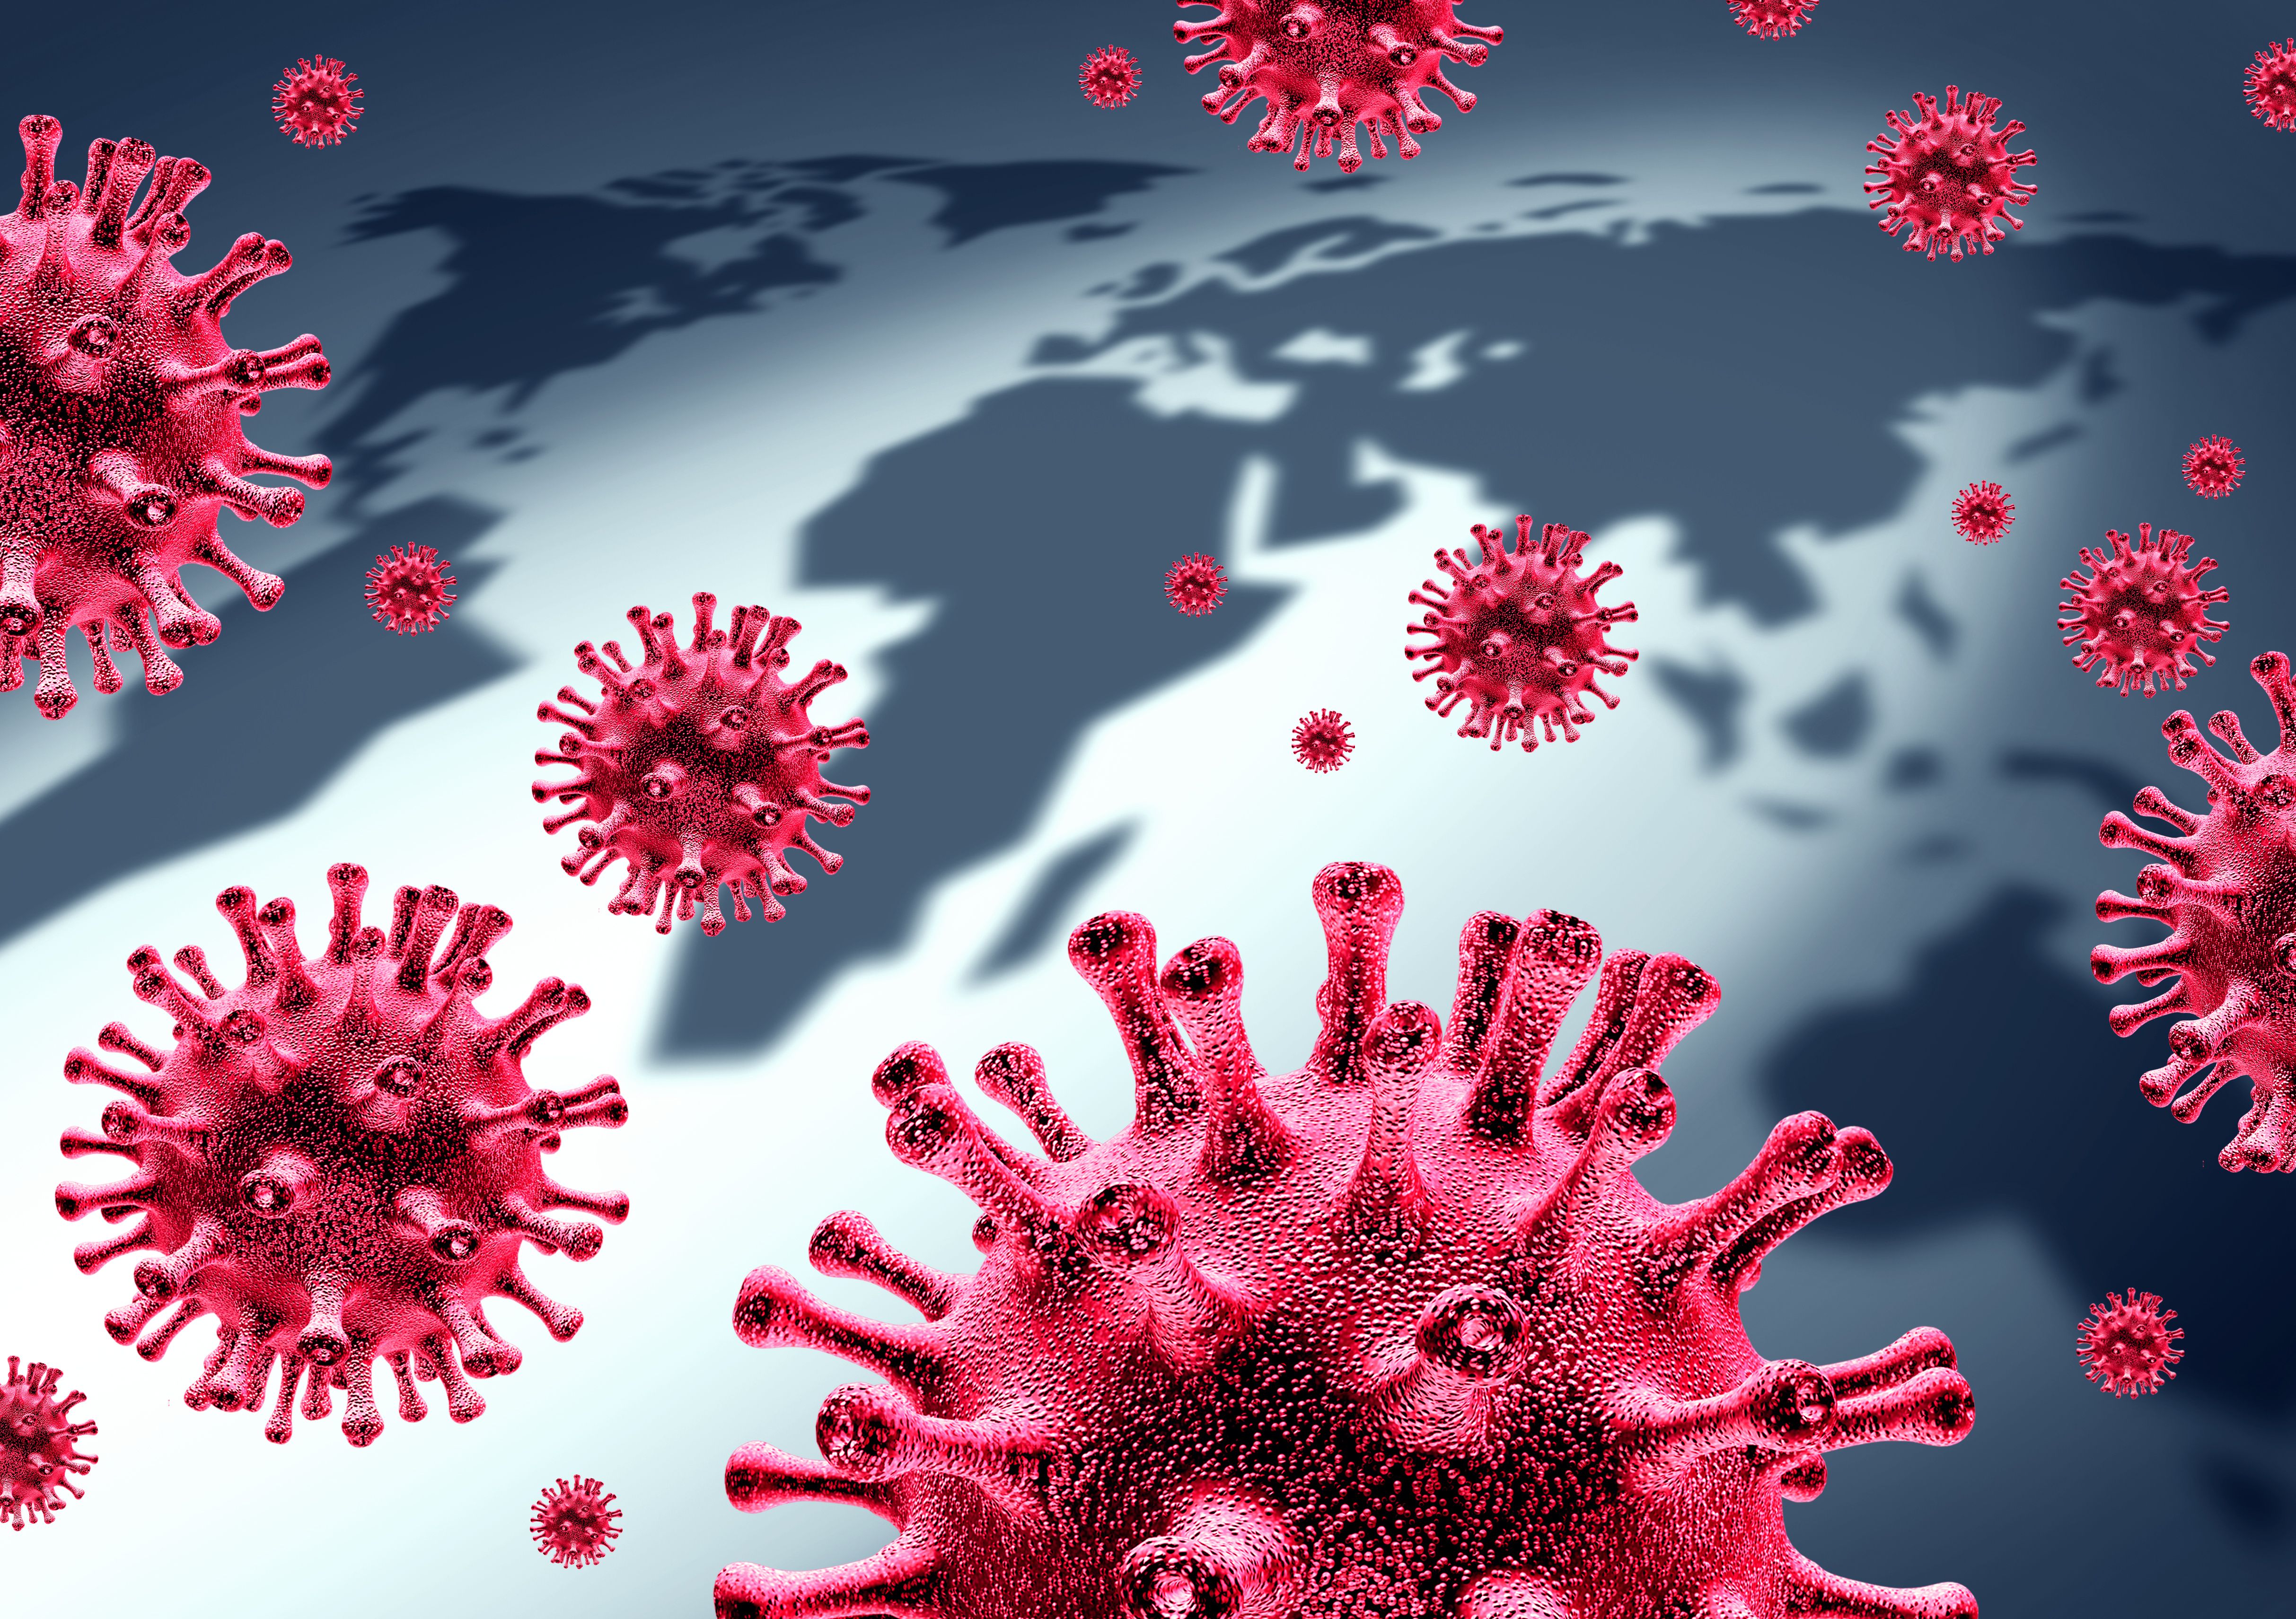 La OMS publicará en febrero el plan de desescalada hacia la fase de control de la pandemia